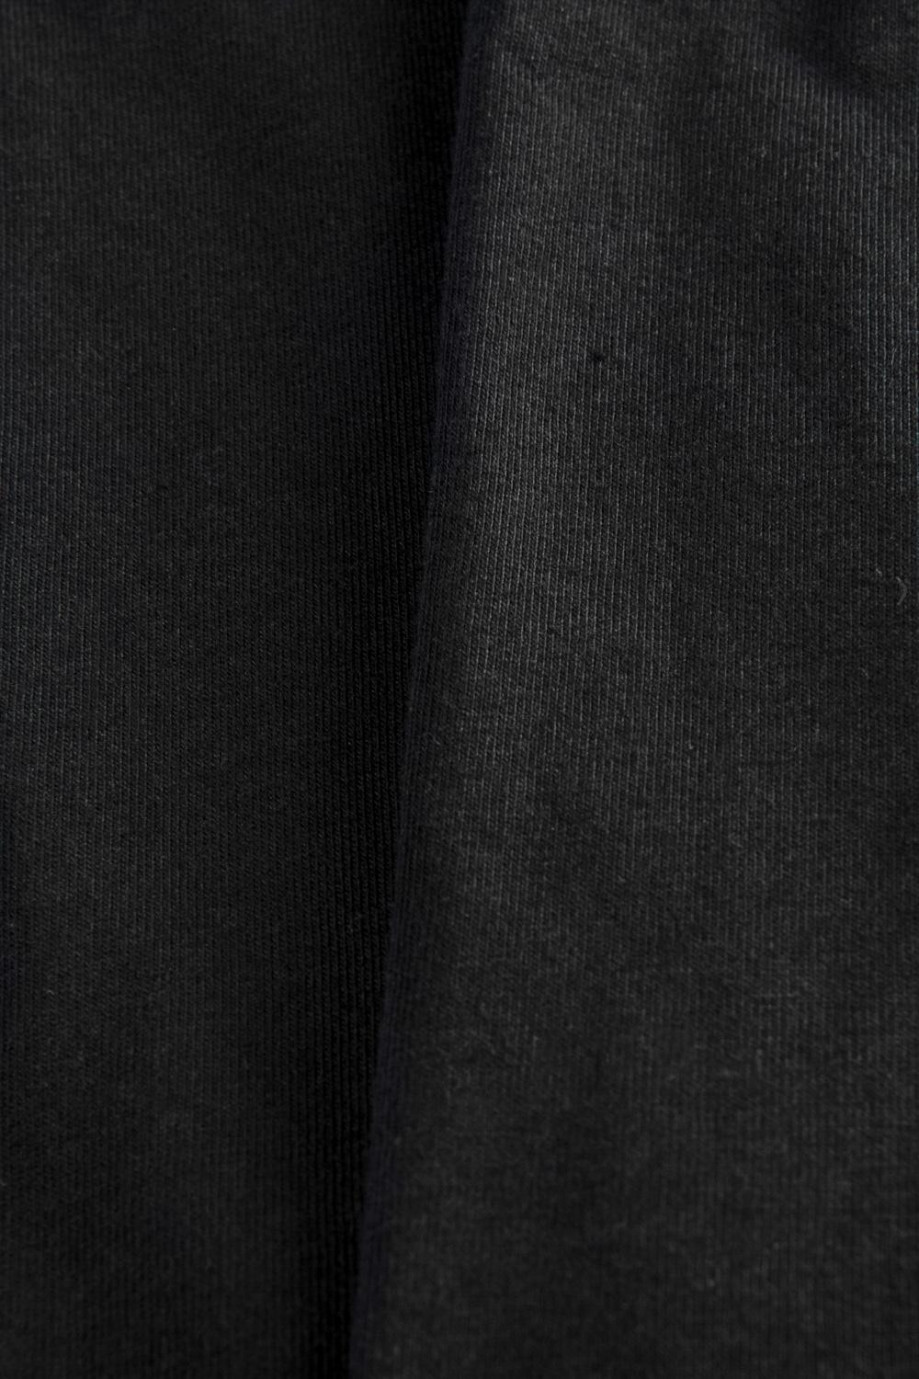 Bóxer negro tipo midway brief con costuras planas visibles en frente